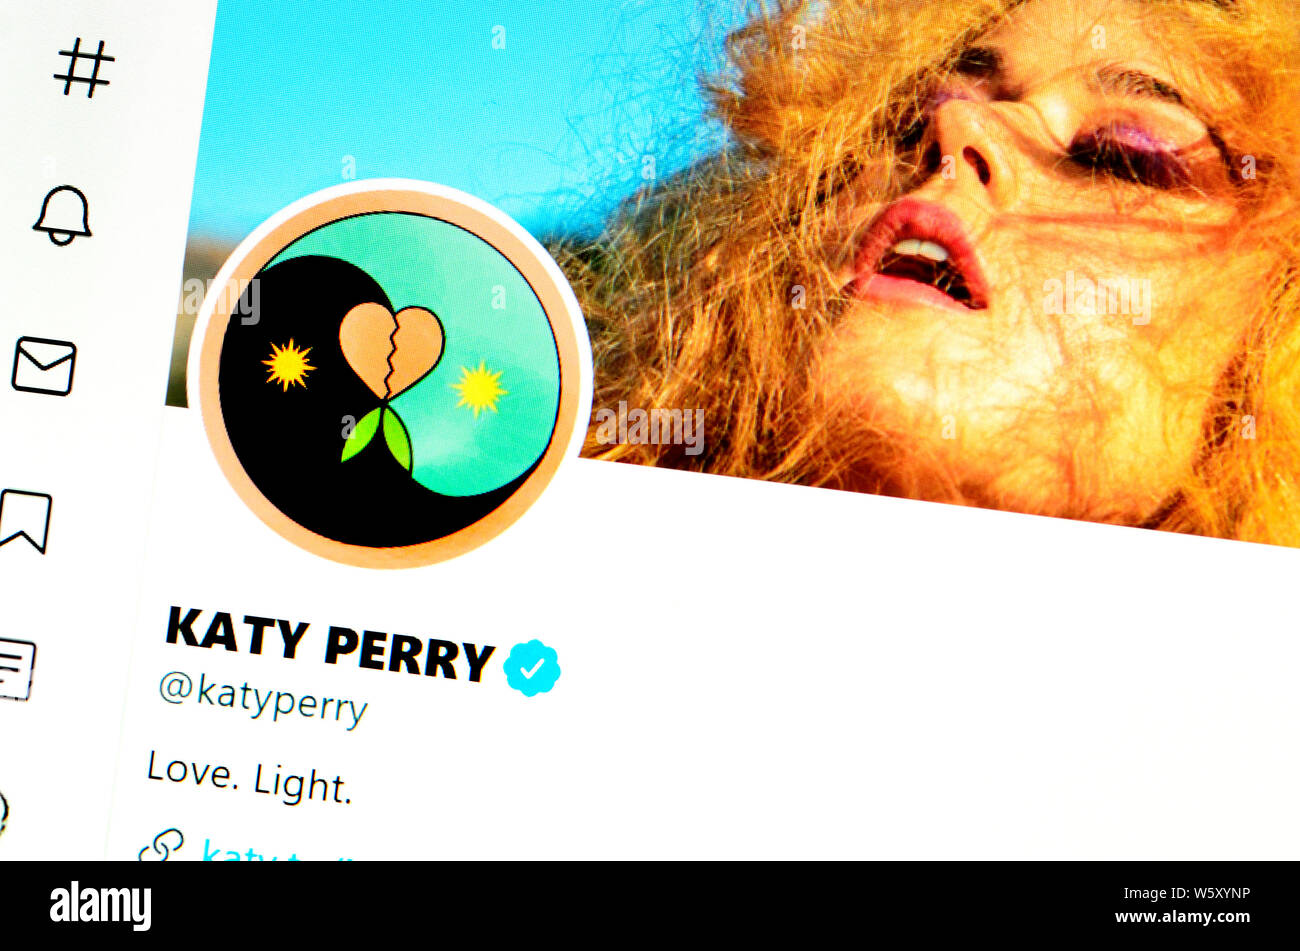 Twitter Seite (Juli 2019): Katy Perry - amerikanische Sängerin Stockfoto